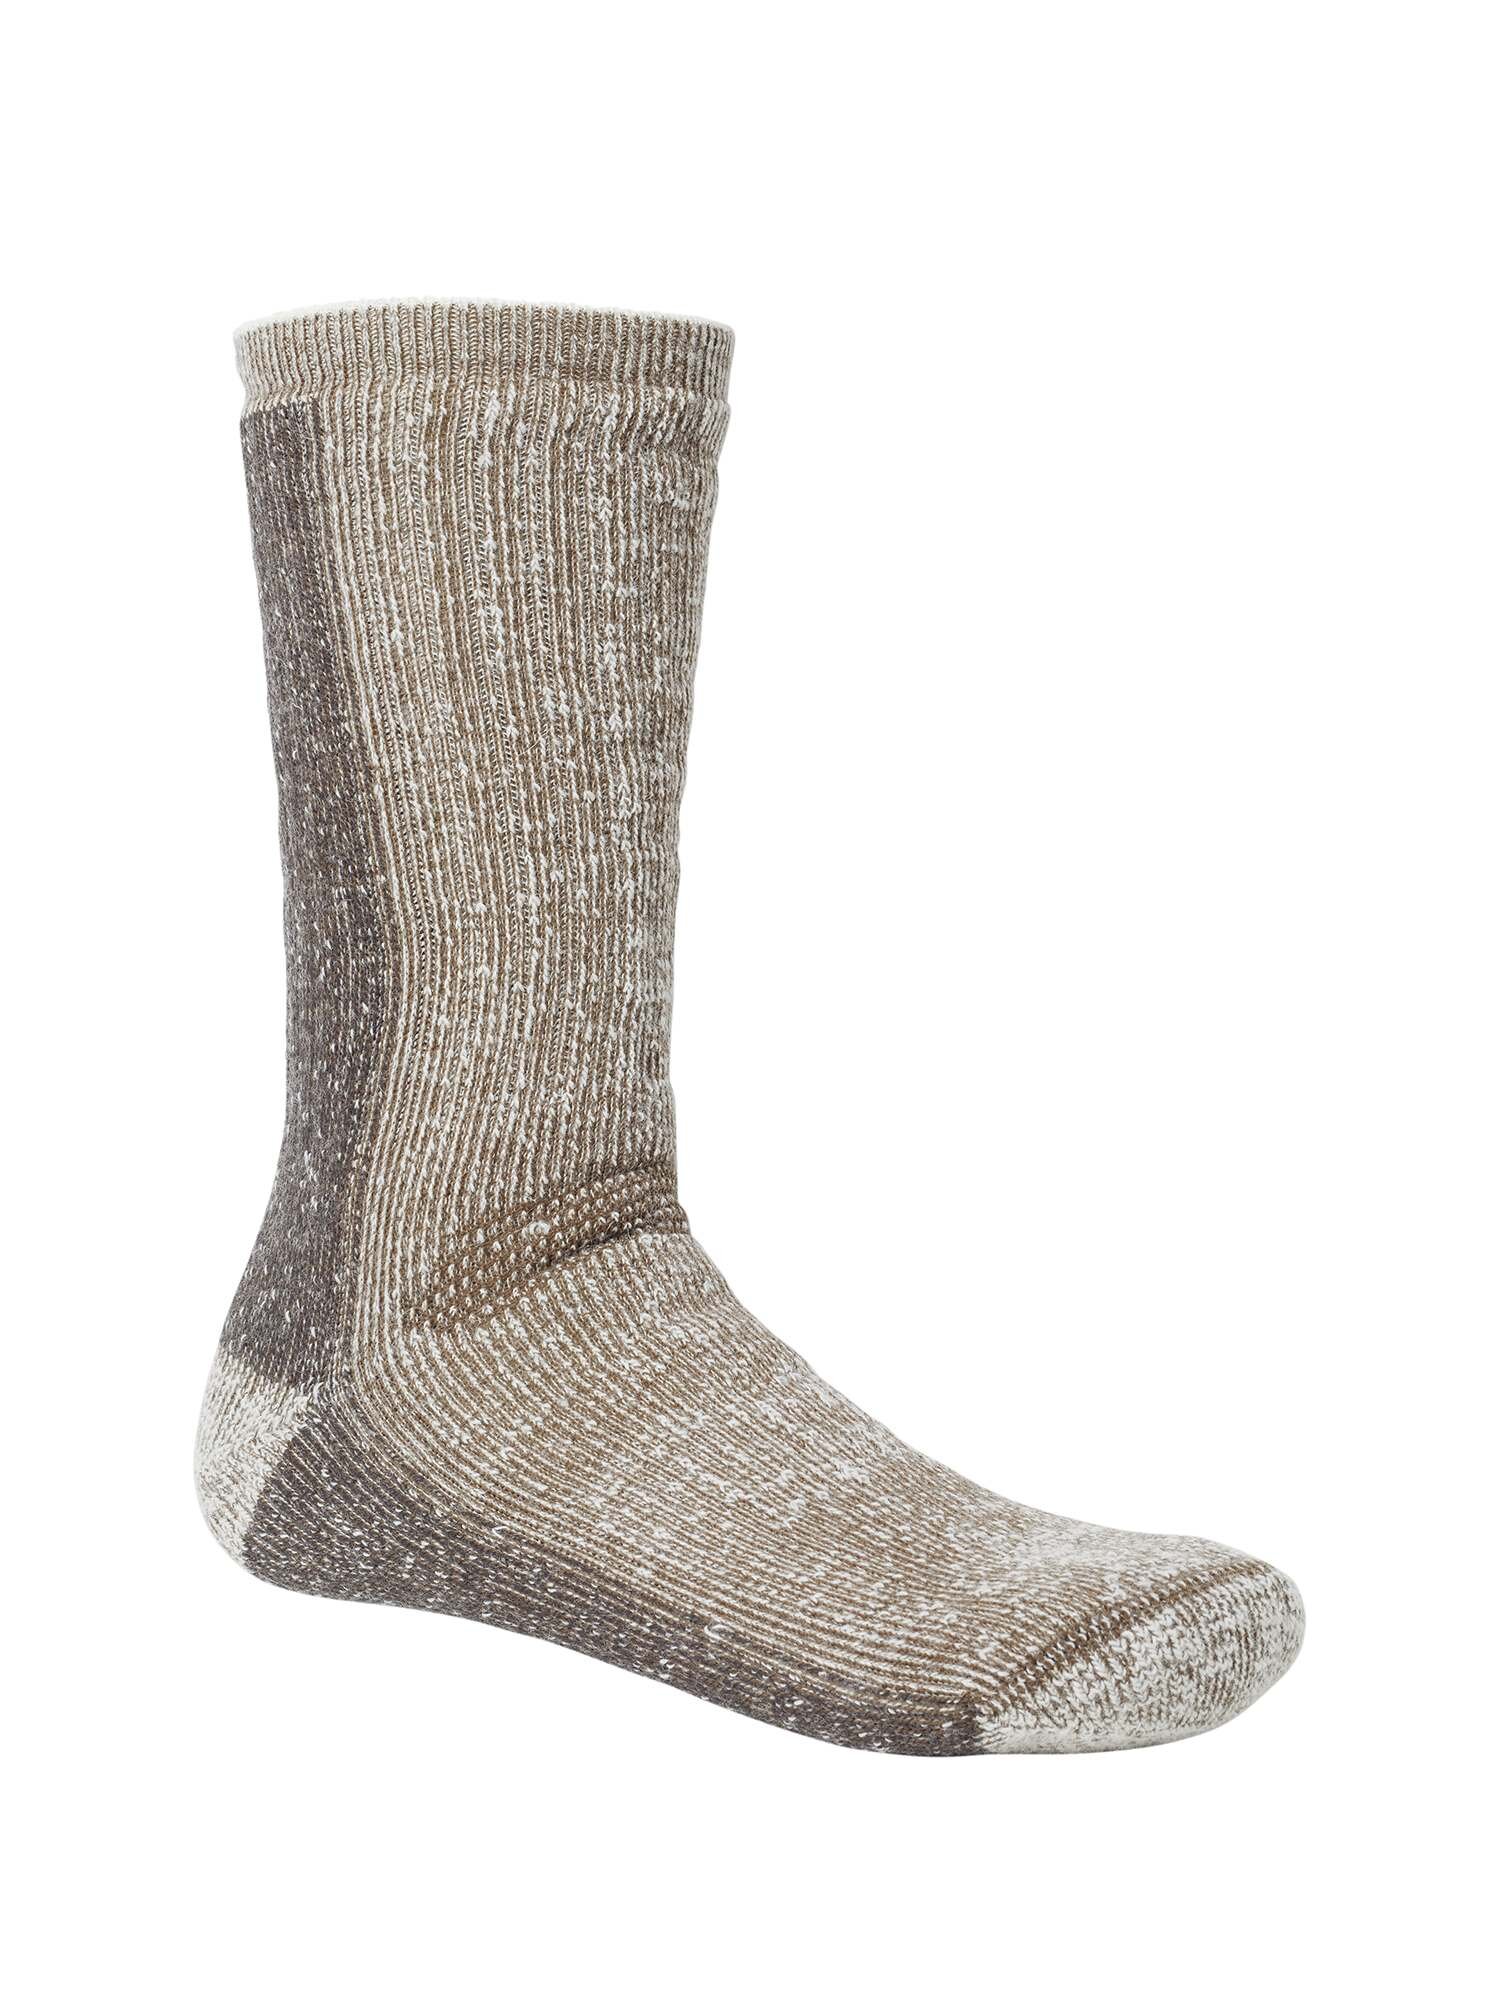 Select Frostbite Winter Wool Socks